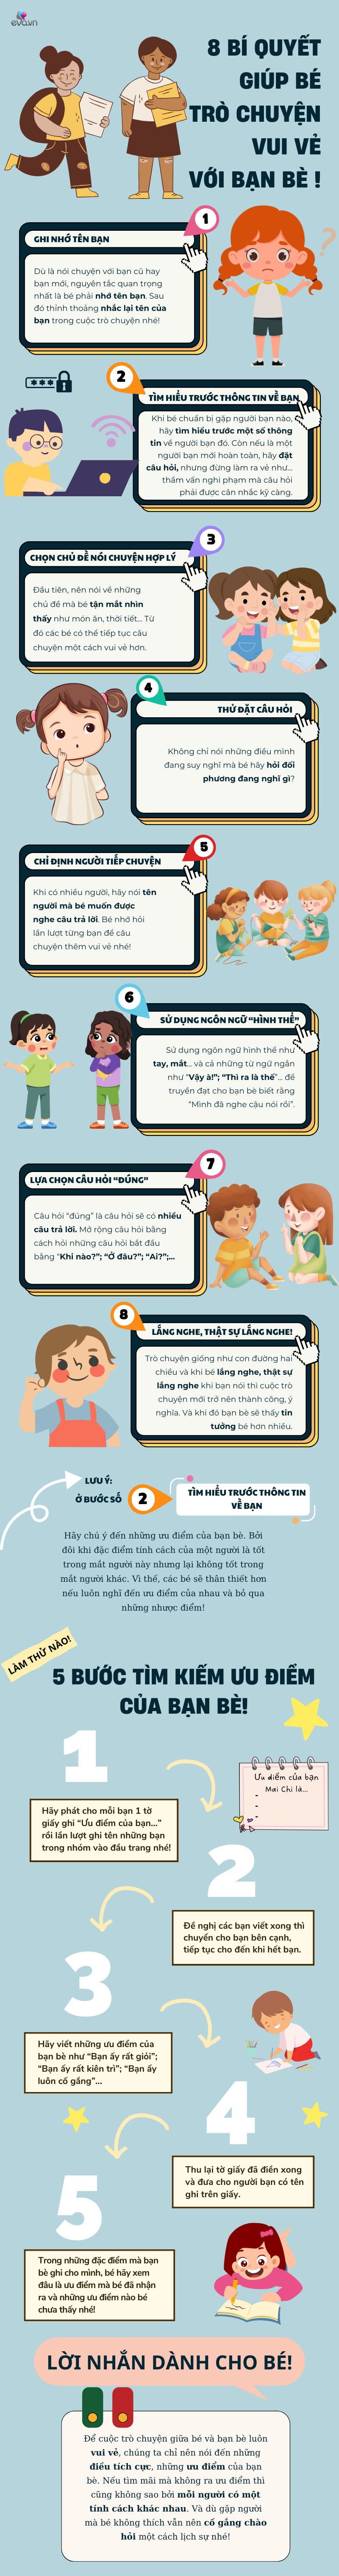 Kỹ năng sống cho trẻ mầm non (P21): 8 bí quyết giao tiếp giúp con có cuộc trò chuyện vui vẻ với bạn bè - 1